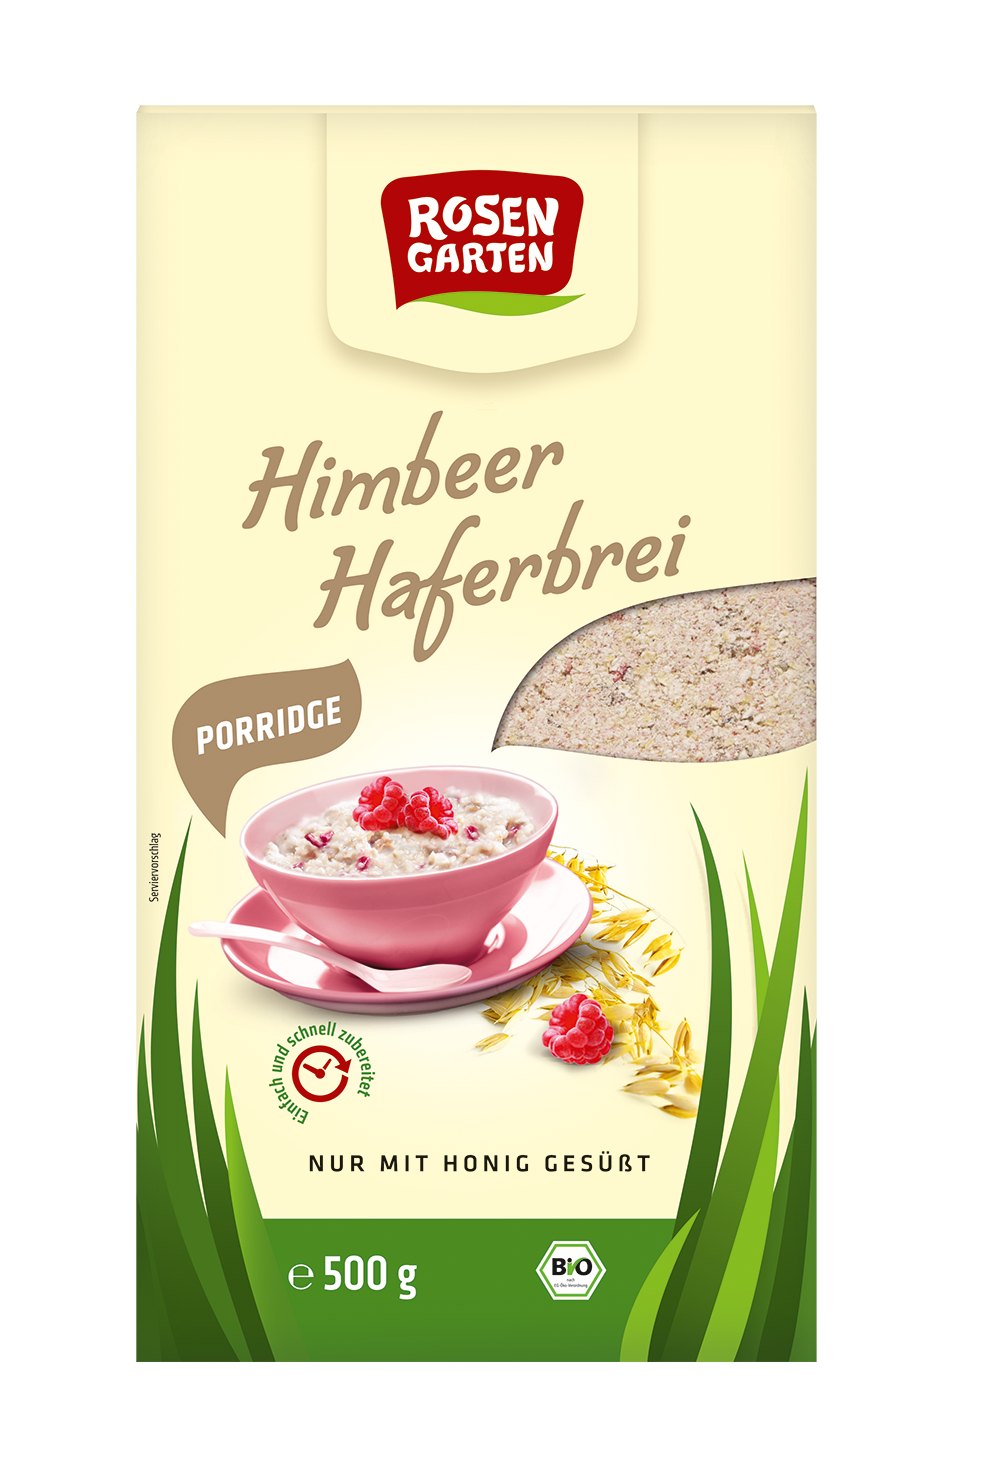 Rosengarten Porridge Himbeer-Haferbrei 500g